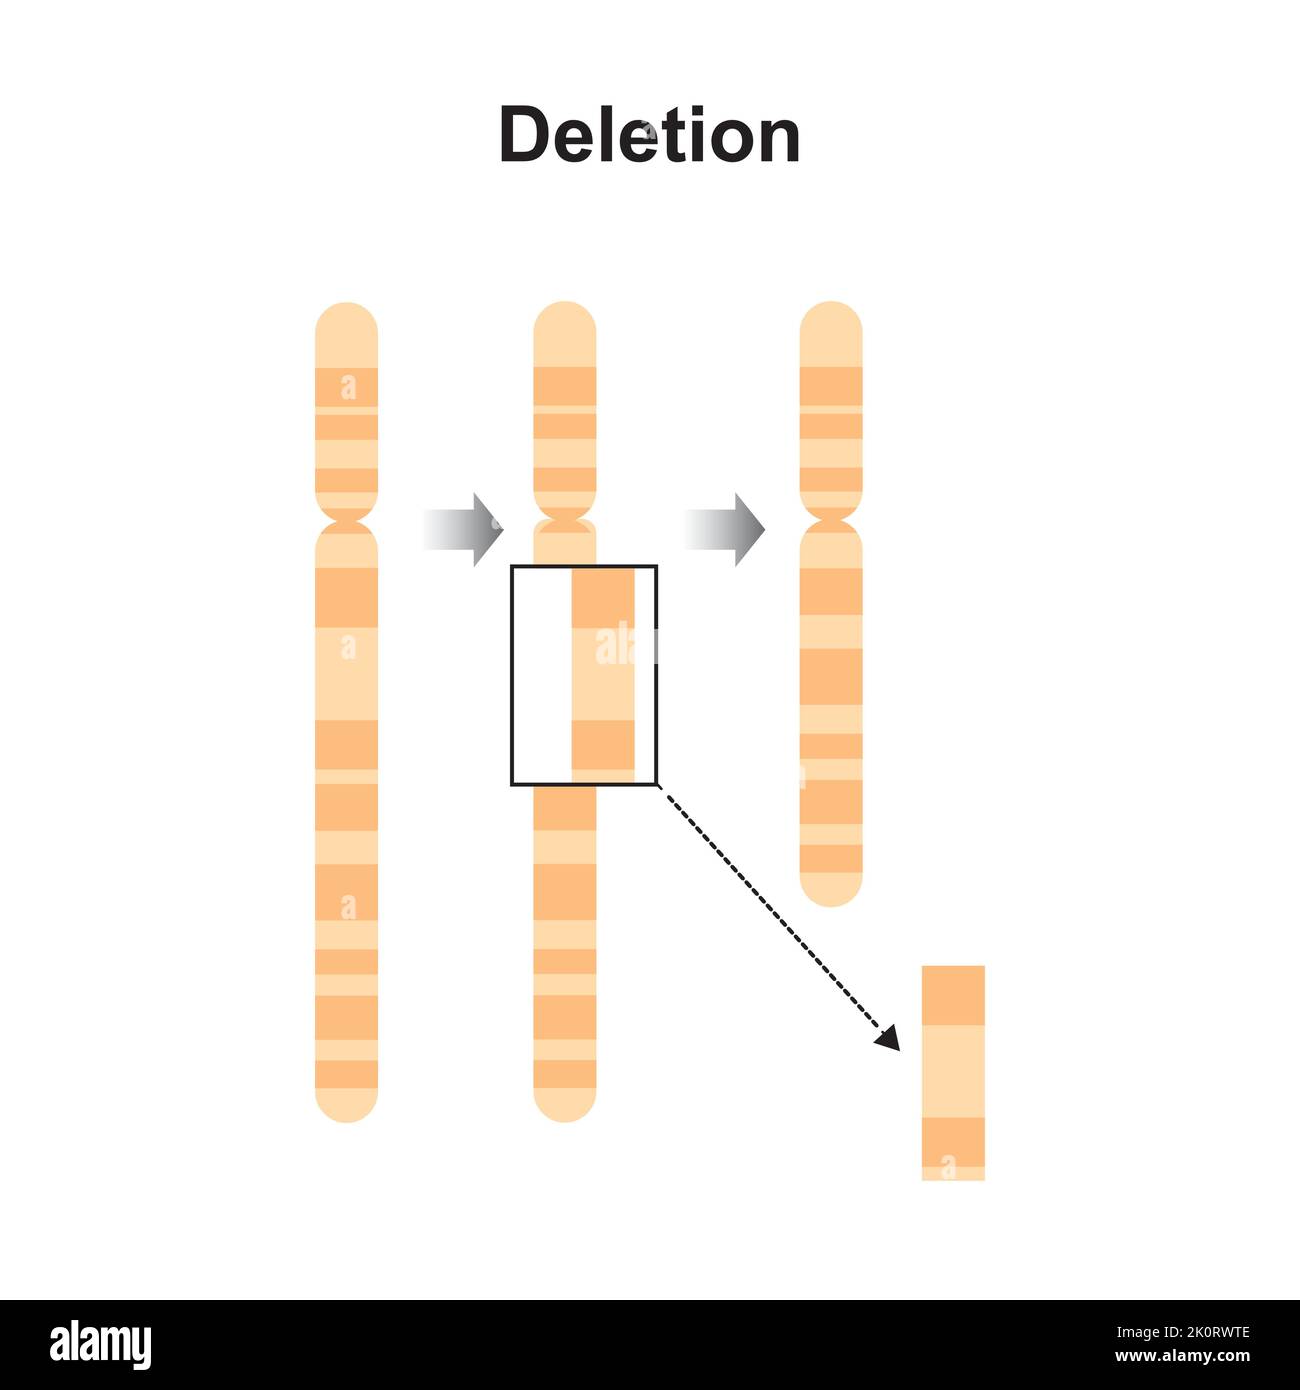 Progettazione scientifica della mutazione cromosomica di eliminazione. Simboli colorati. Illustrazione vettoriale. Illustrazione Vettoriale